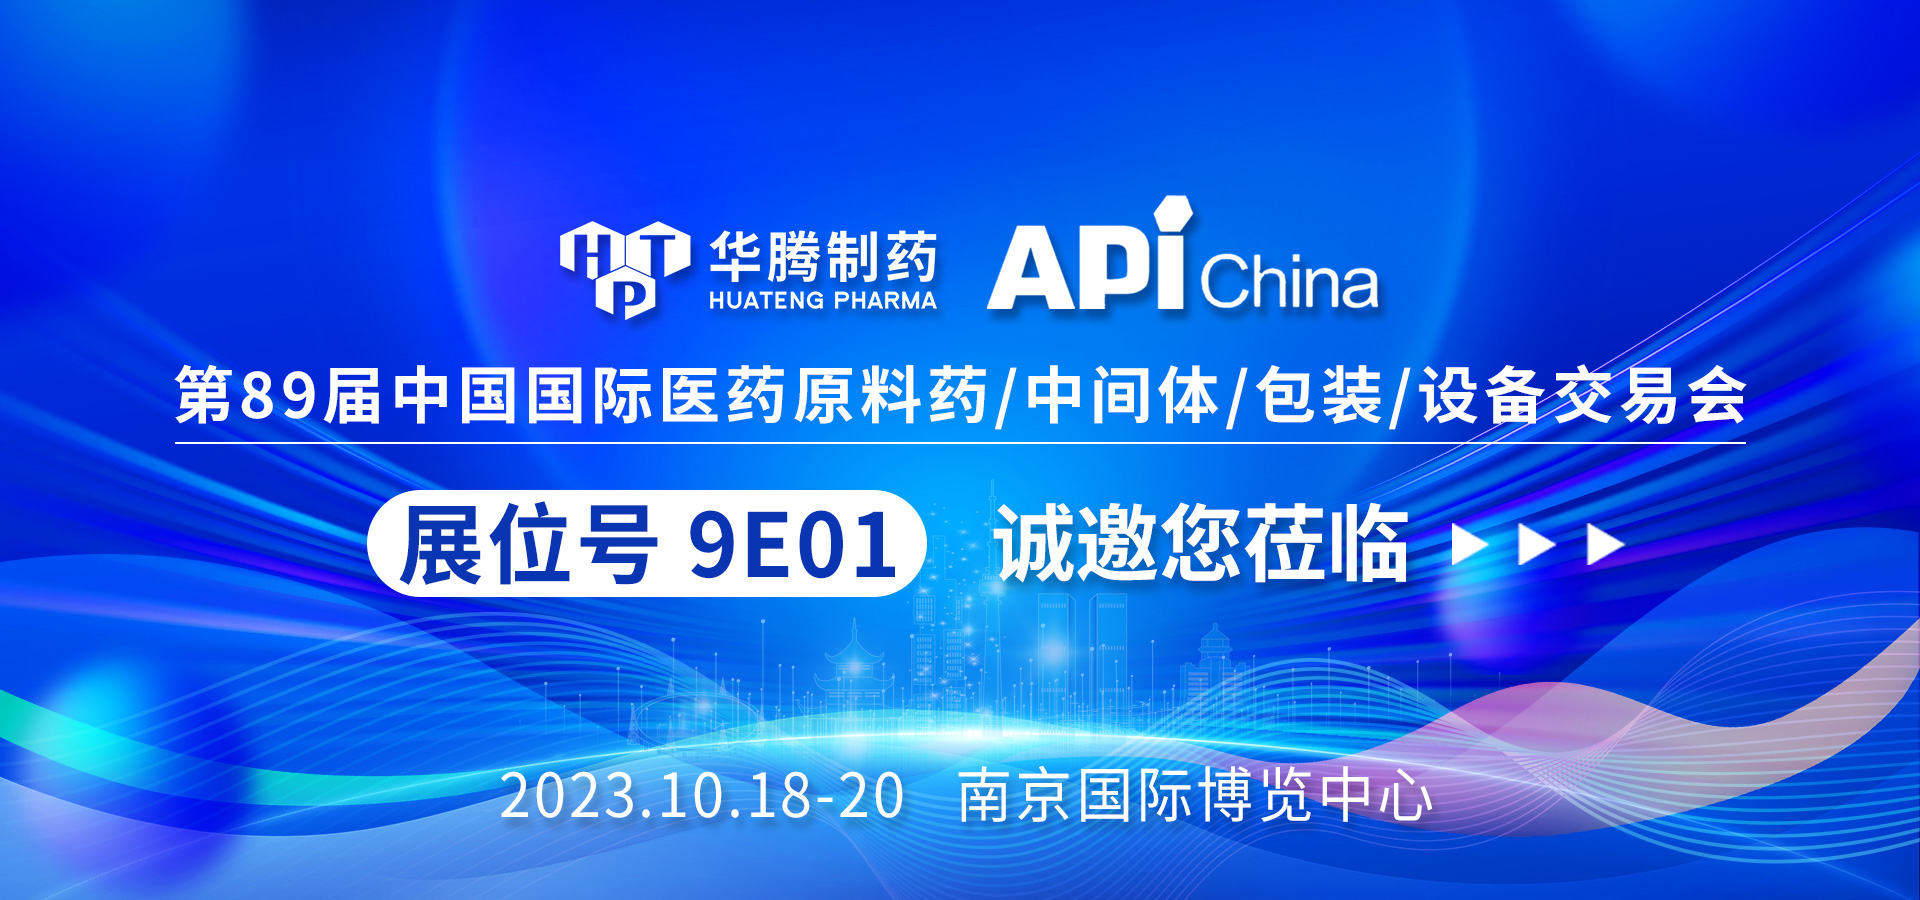 【展會預告】華騰制藥邀您共赴南京API China展會